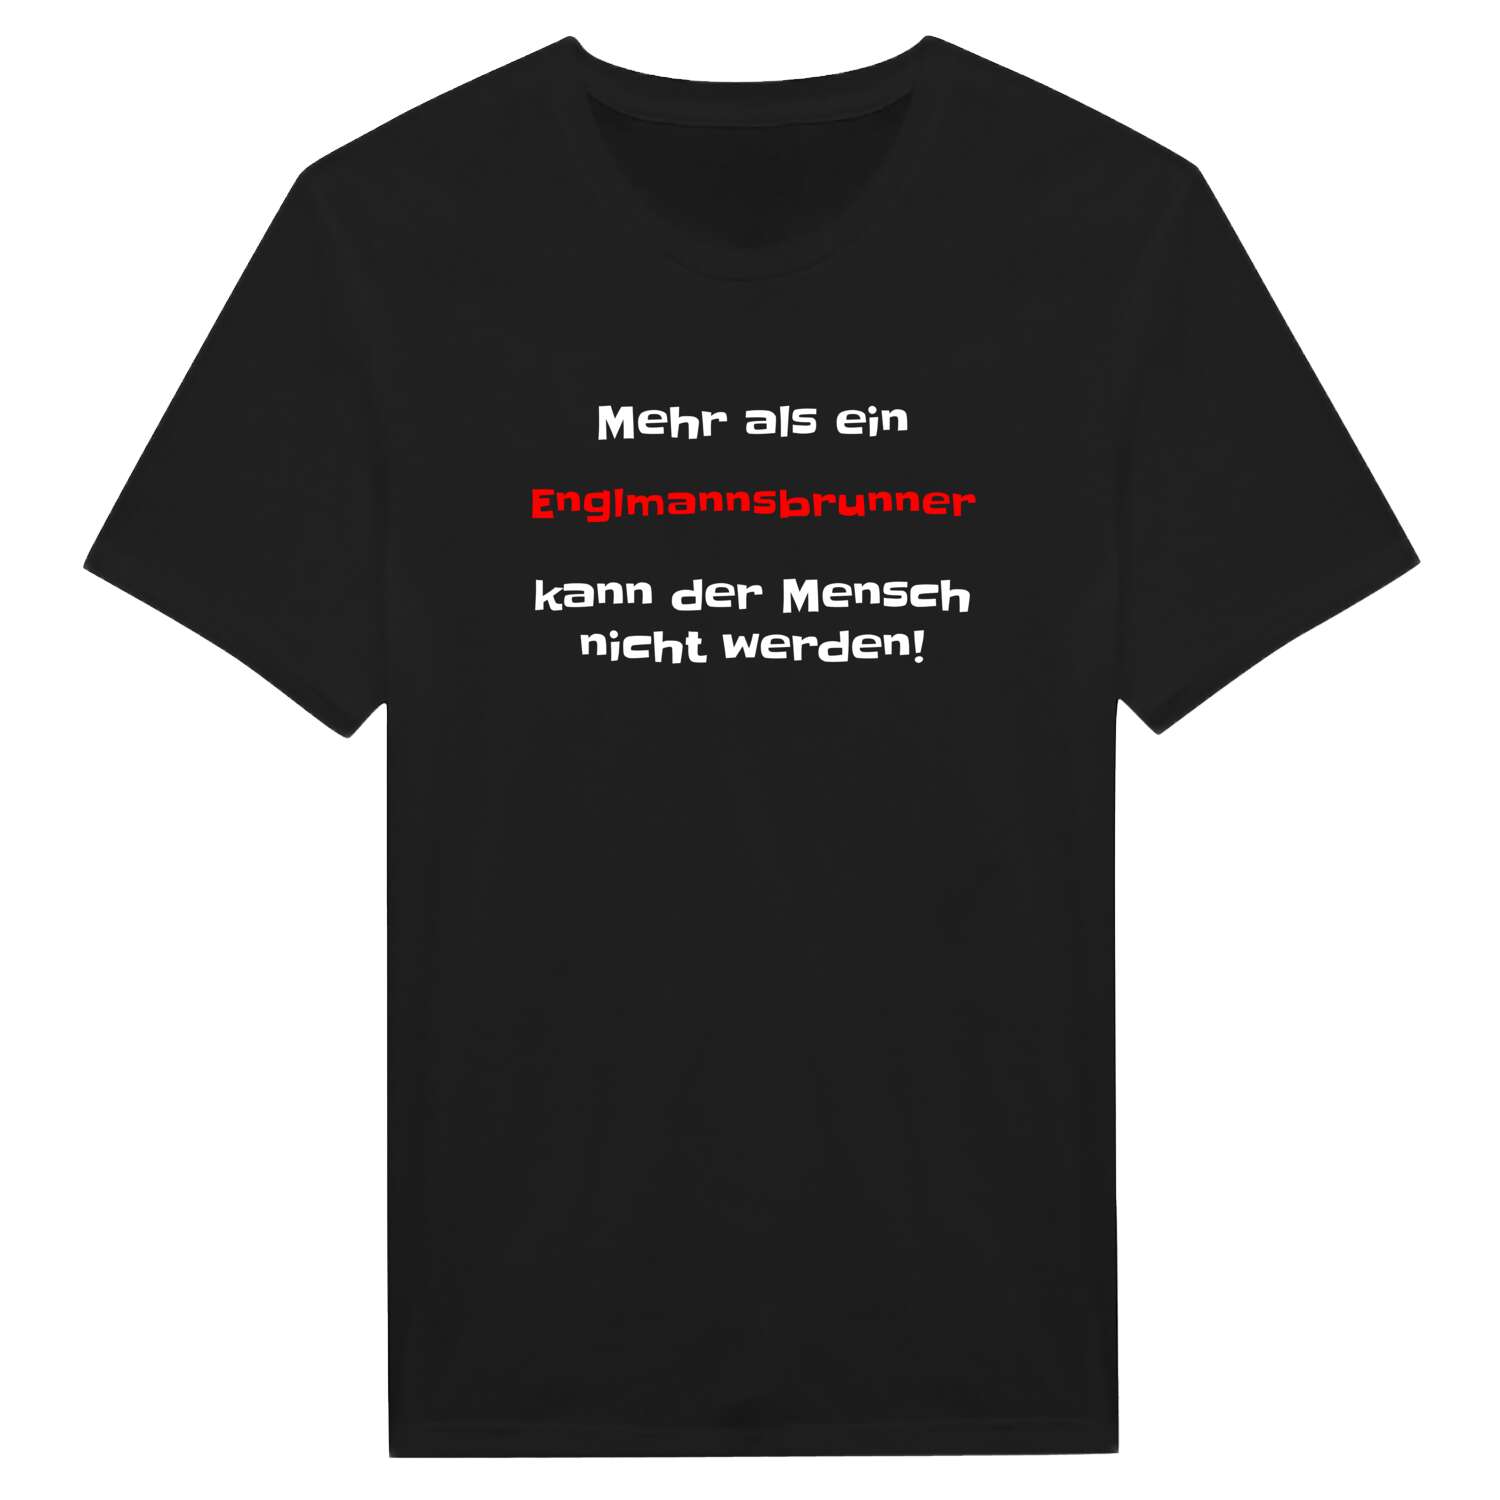 Englmannsbrunn T-Shirt »Mehr als ein«